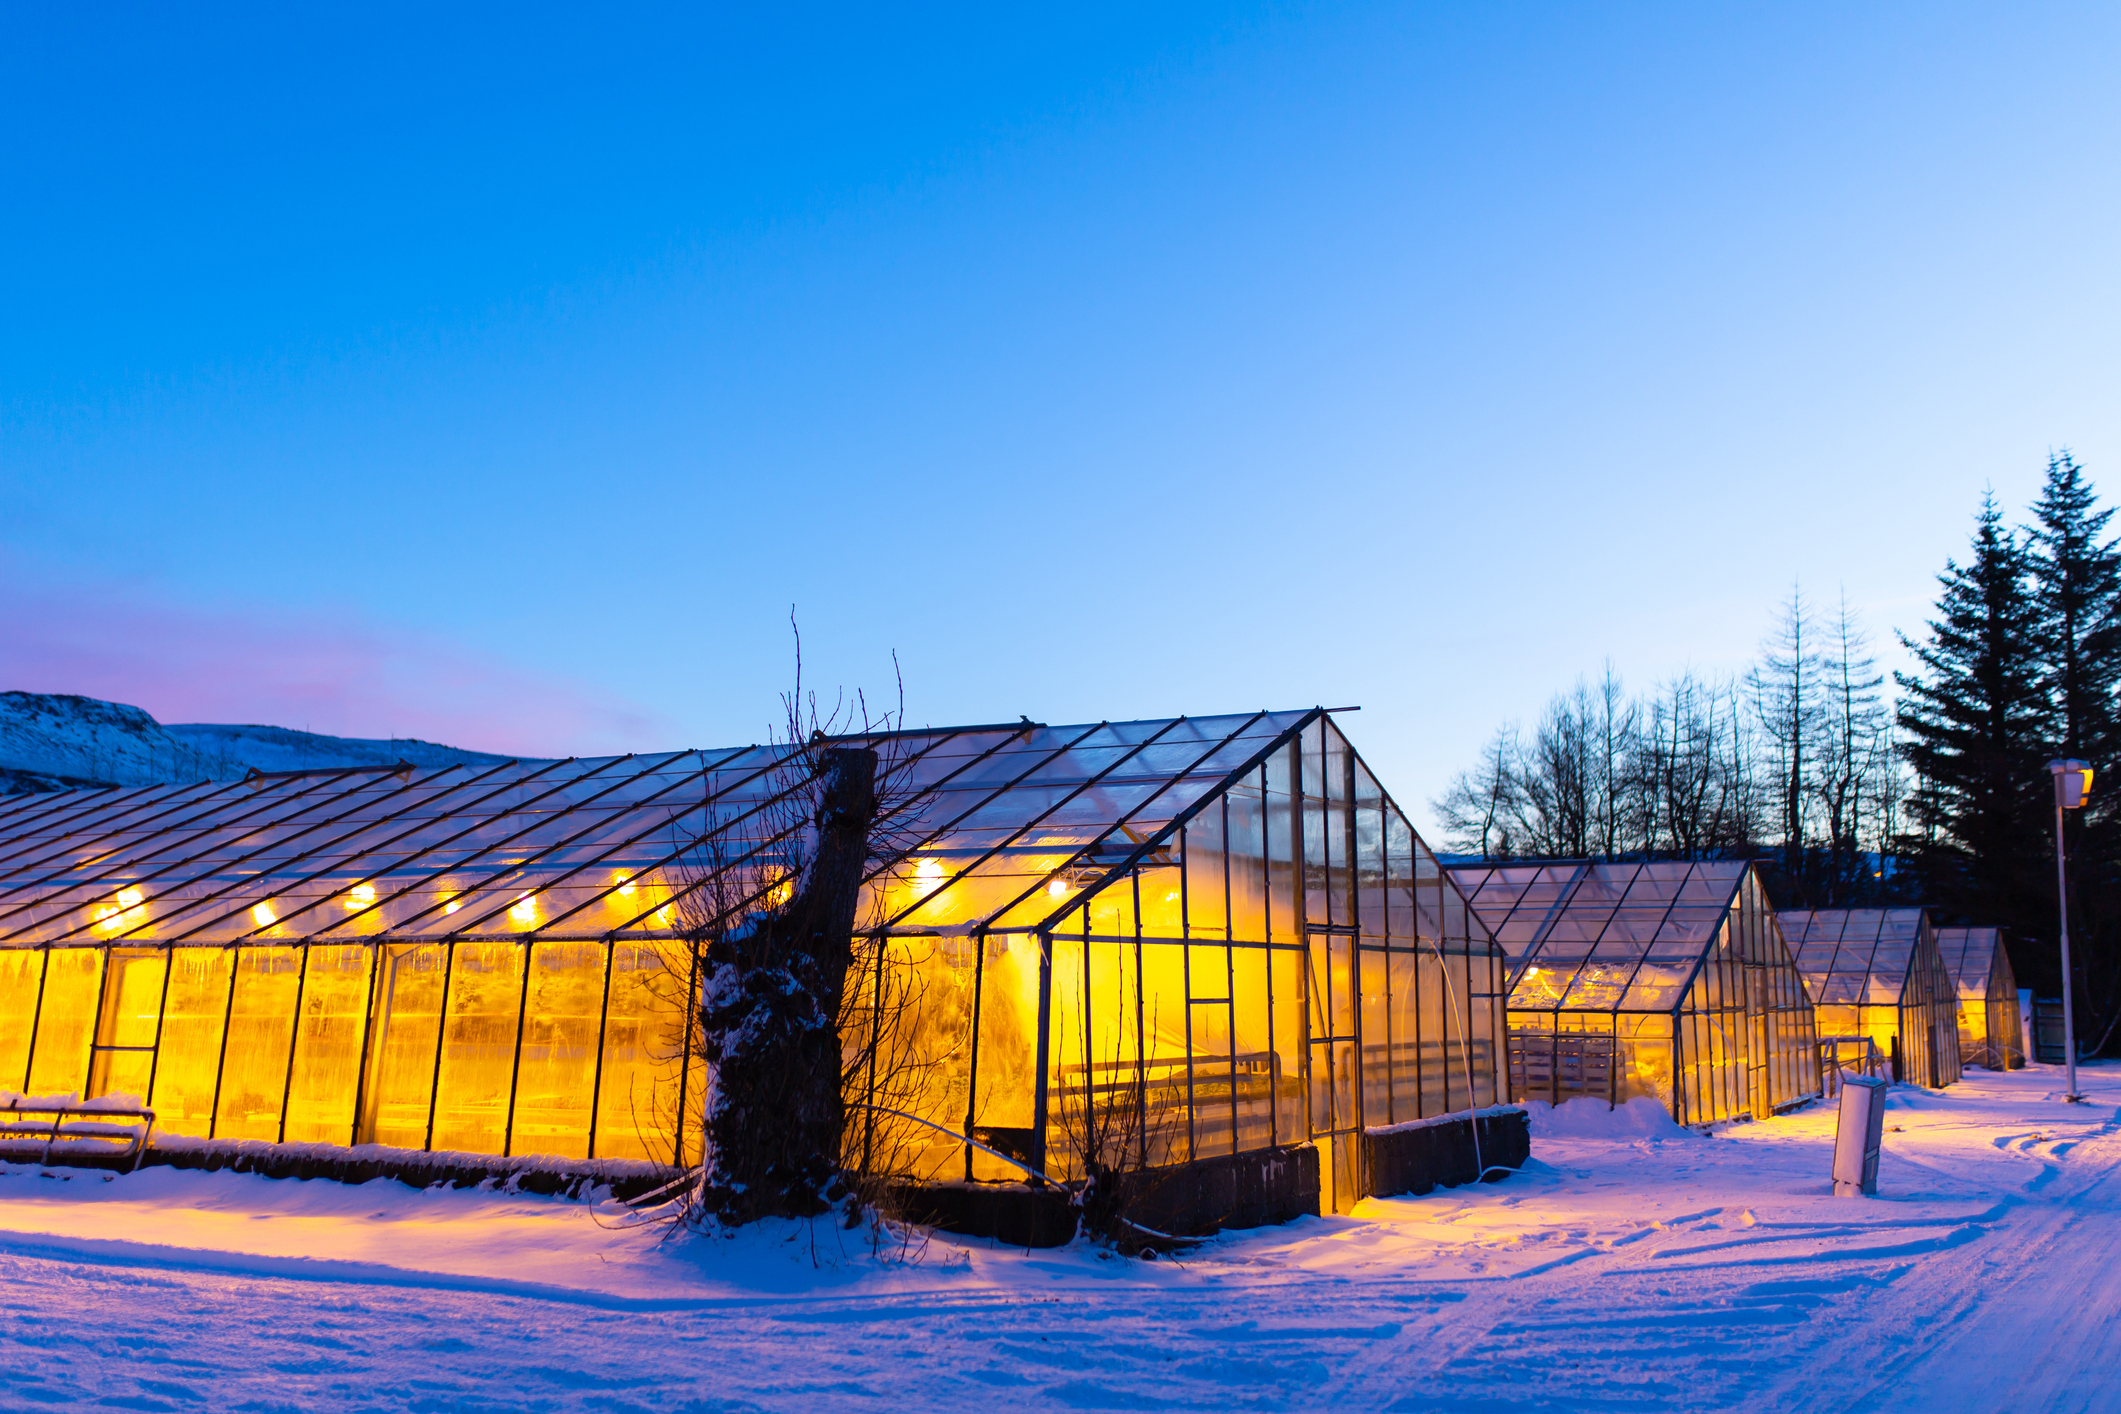 Szklarnie przemysłowe do uprawy roślin w zimie